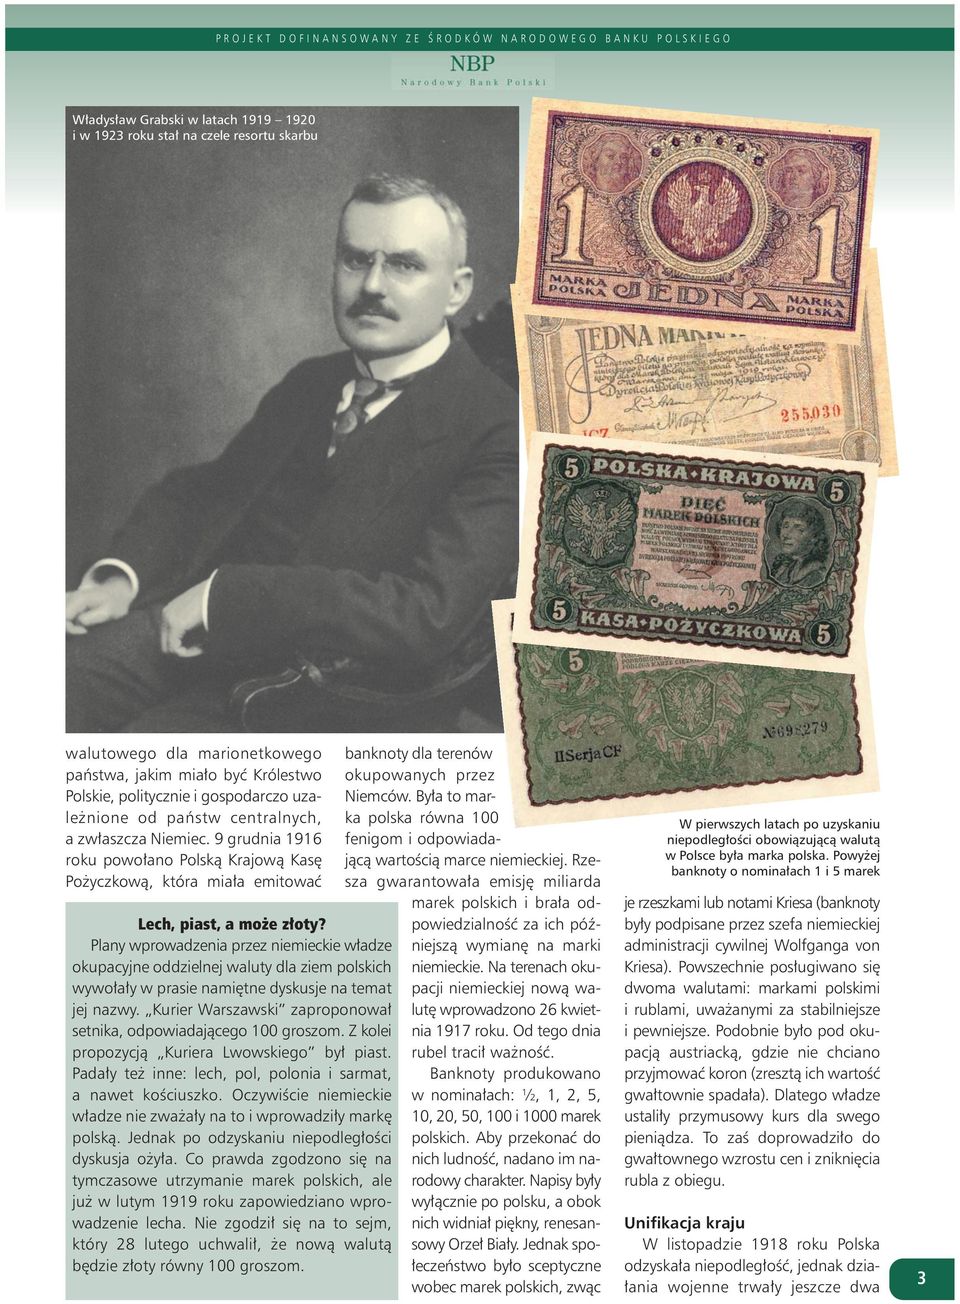 Plany wprowadzenia przez niemieckie władze okupacyjne oddzielnej waluty dla ziem polskich wywołały w prasie namiętne dyskusje na temat jej nazwy.